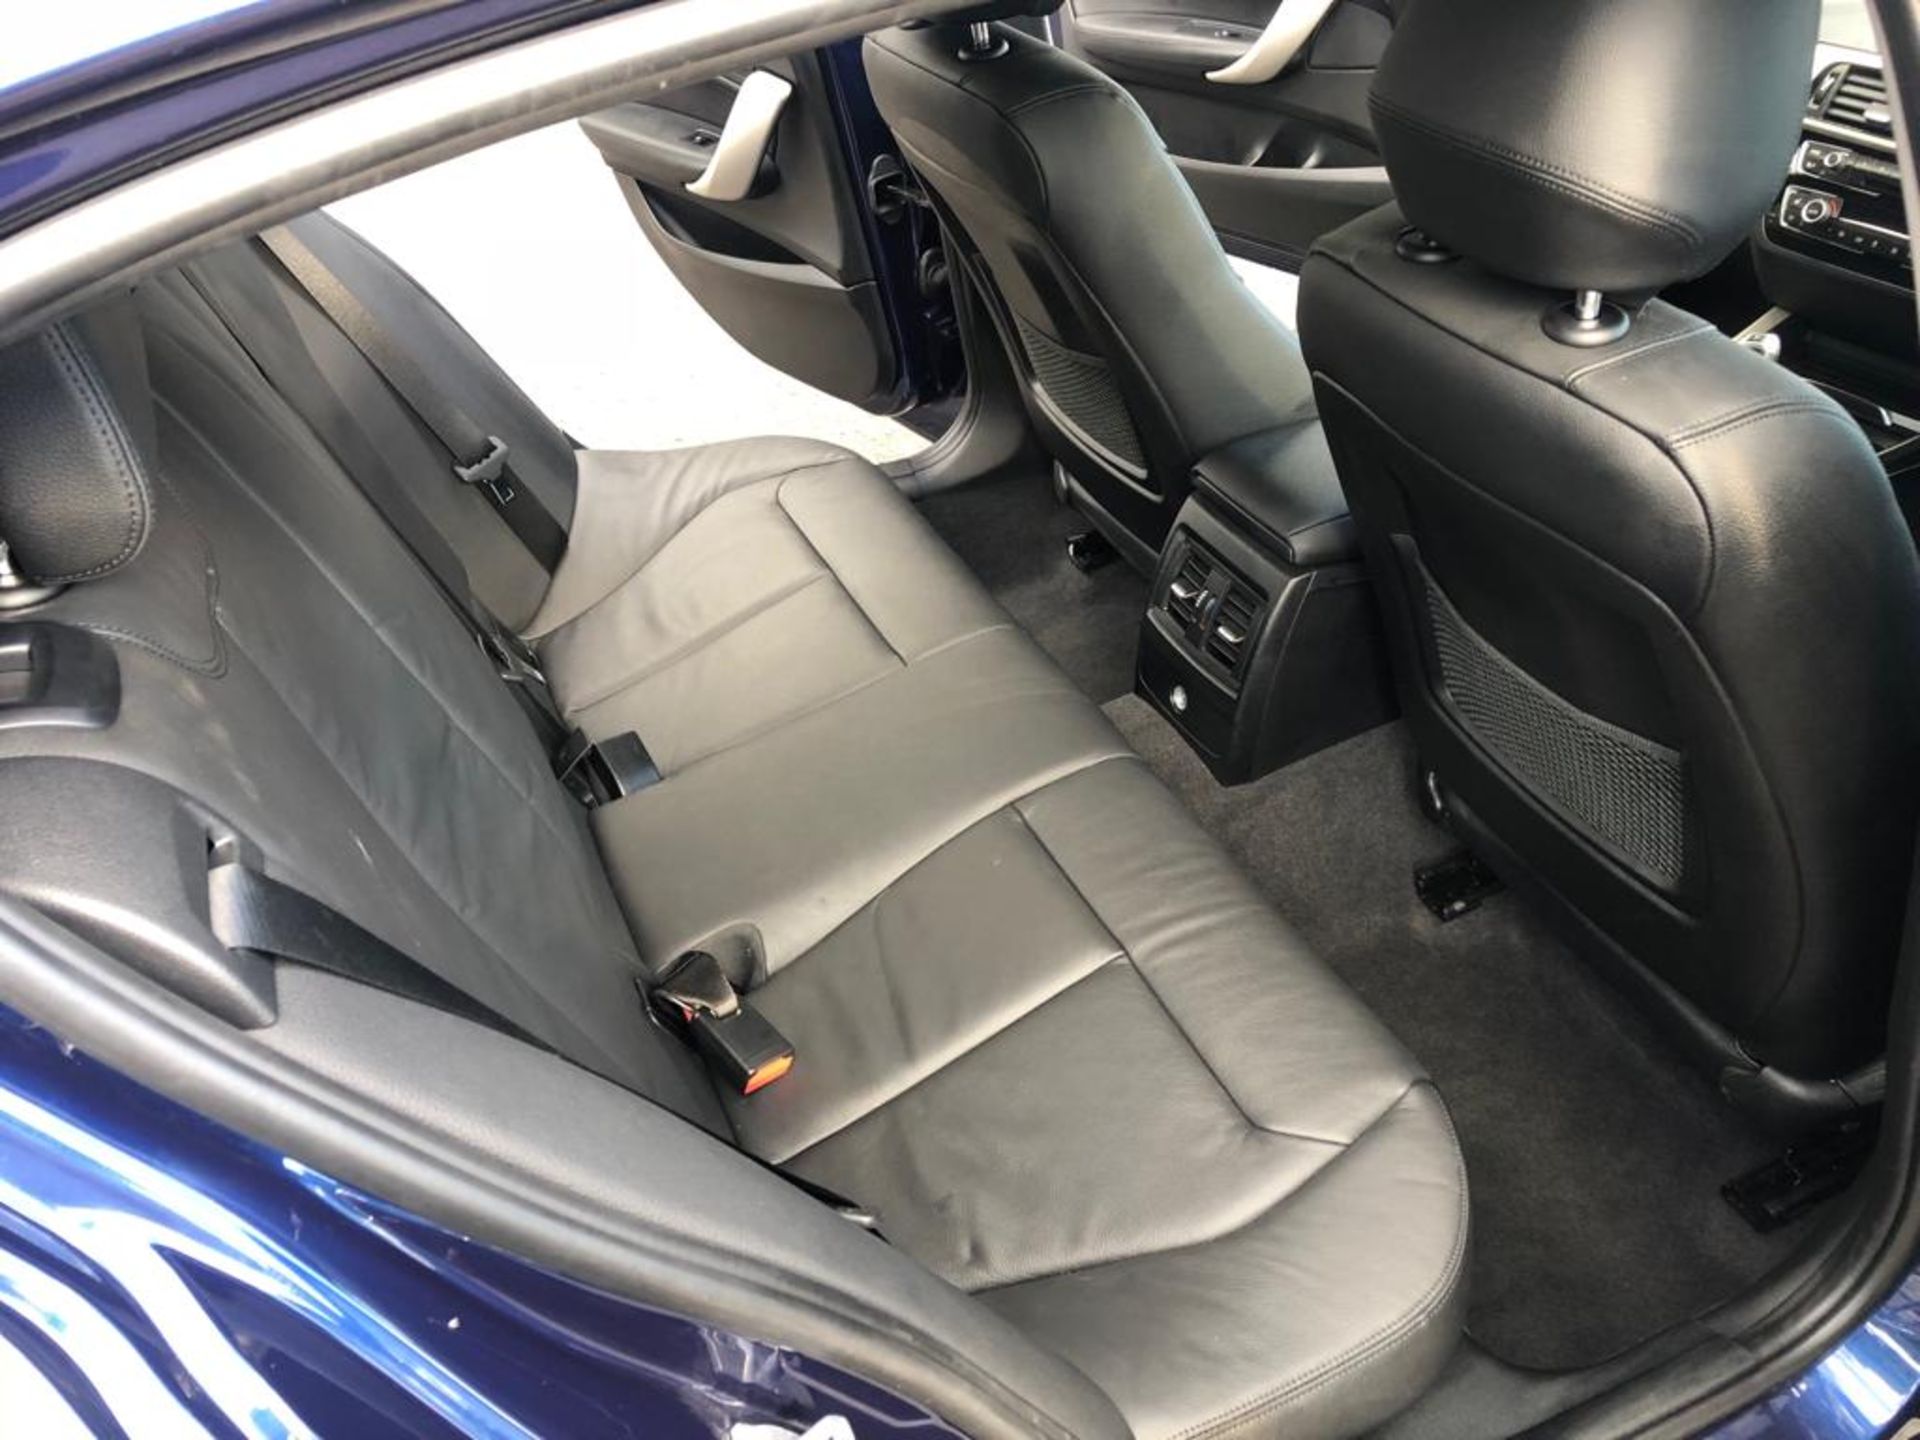 2018/67 REG BMW 118D SE AUTOMATIC BLUE DIESEL 5 DOOR HATCHBACK, SHOWING 0 FORMER KEEPERS *PLUS VAT* - Image 12 of 18